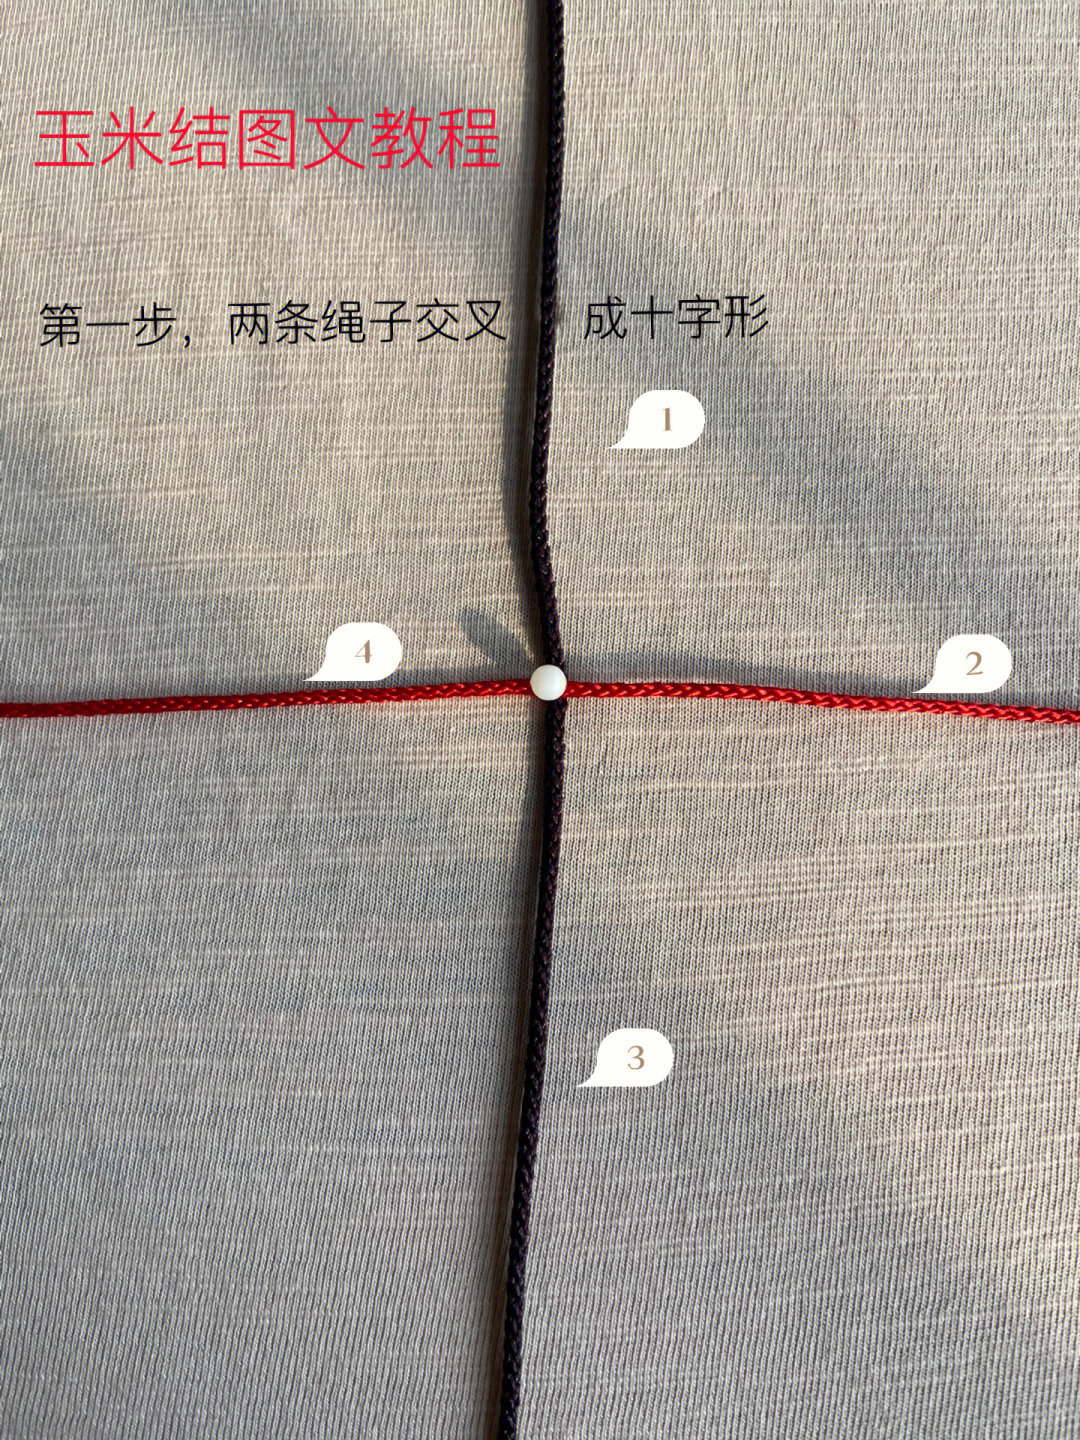 红绳玉米结编织教程图片